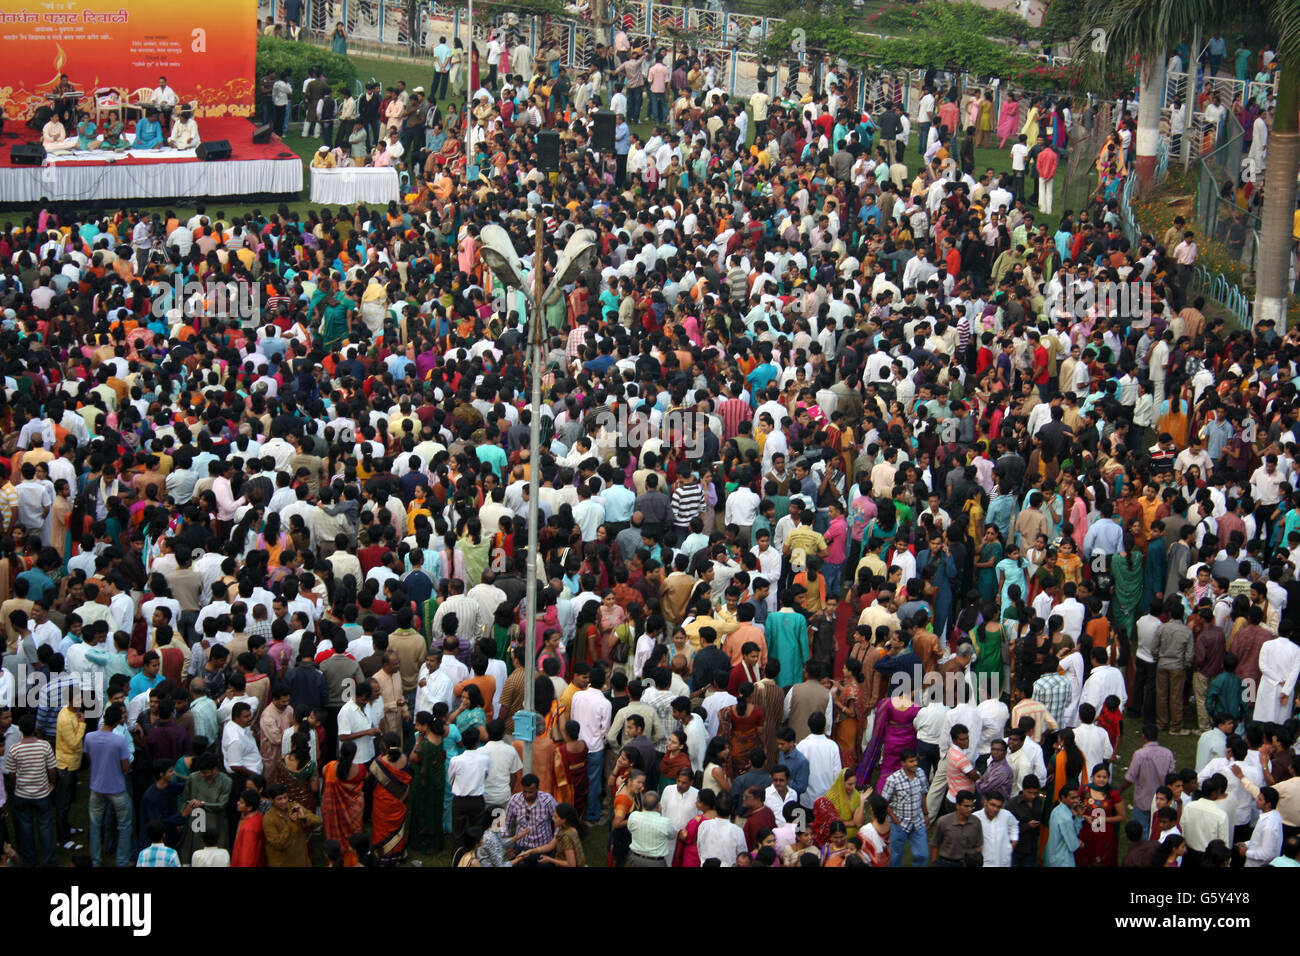 Tausende von Menschen versammeln sich an einem öffentlichen Ort anlässlich Diwali-fest in Indien. Stockfoto